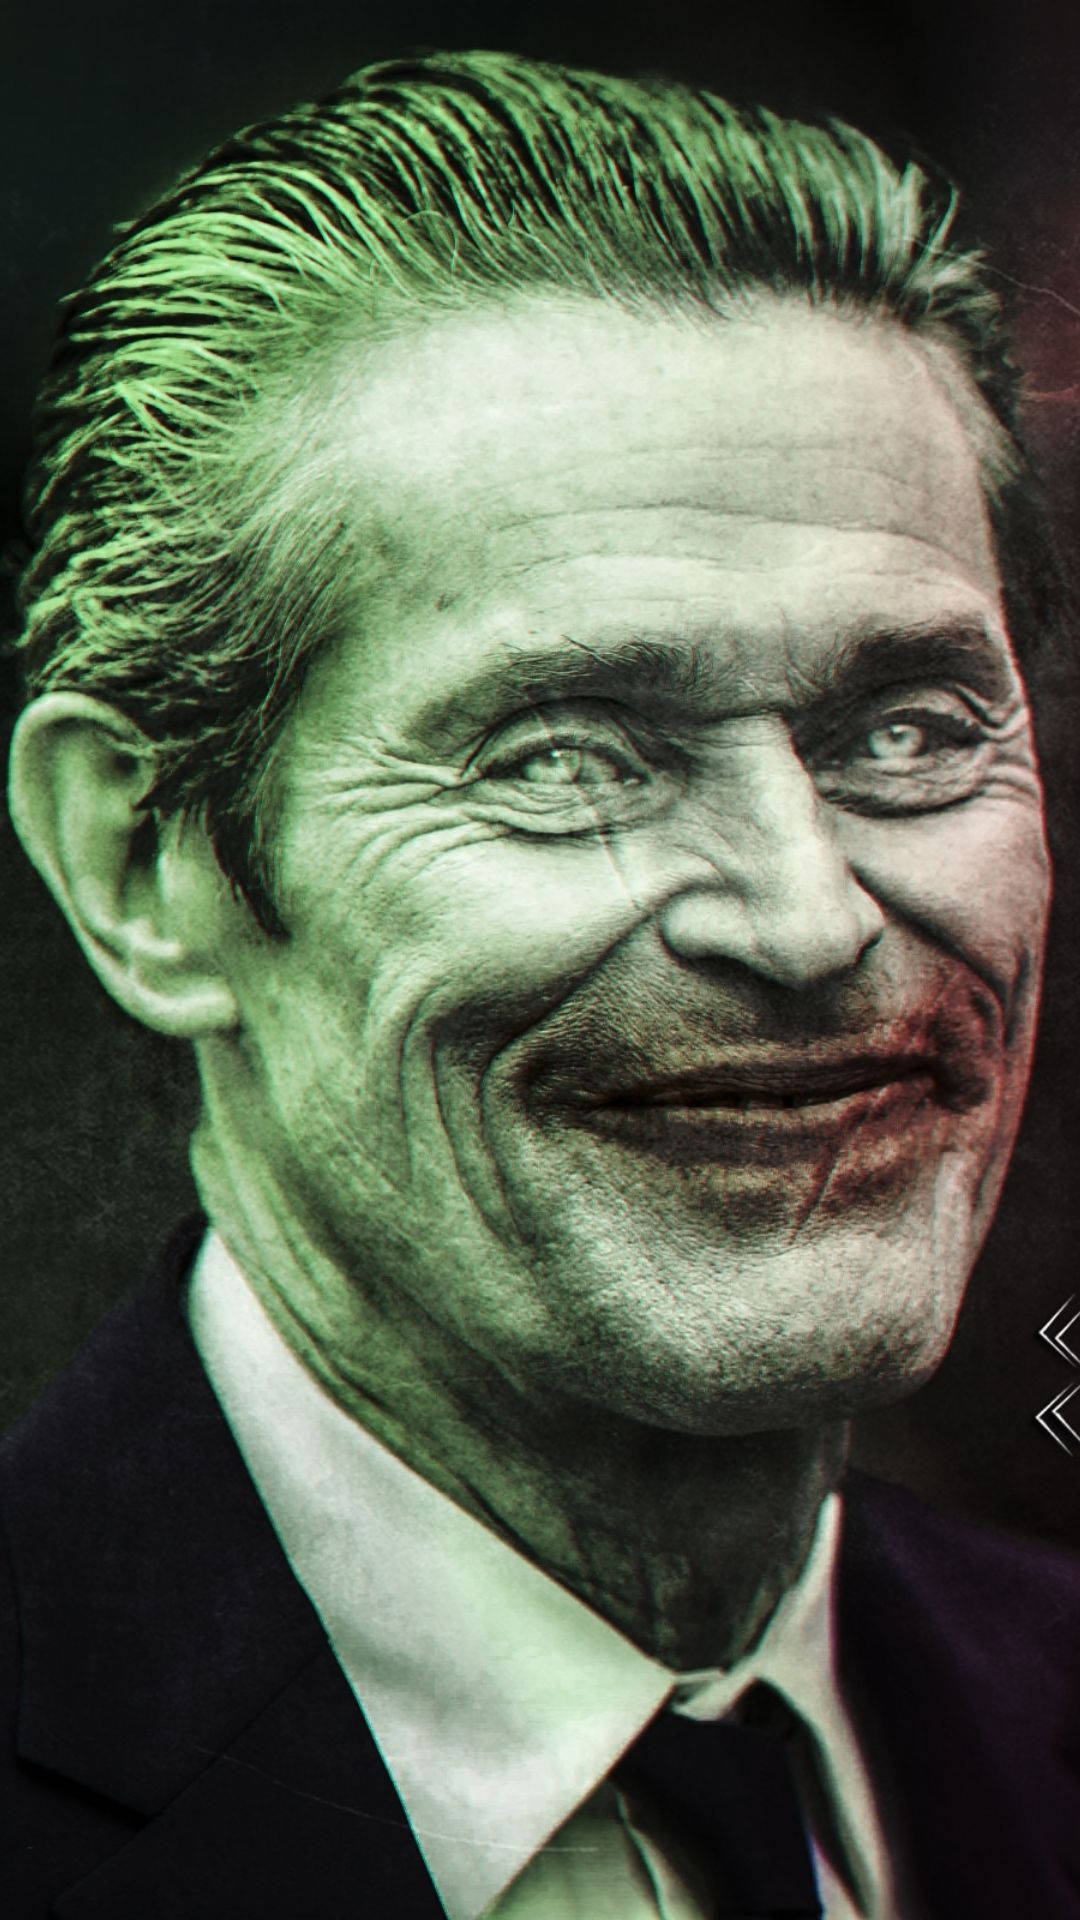 Willem Dafoe Joker Face